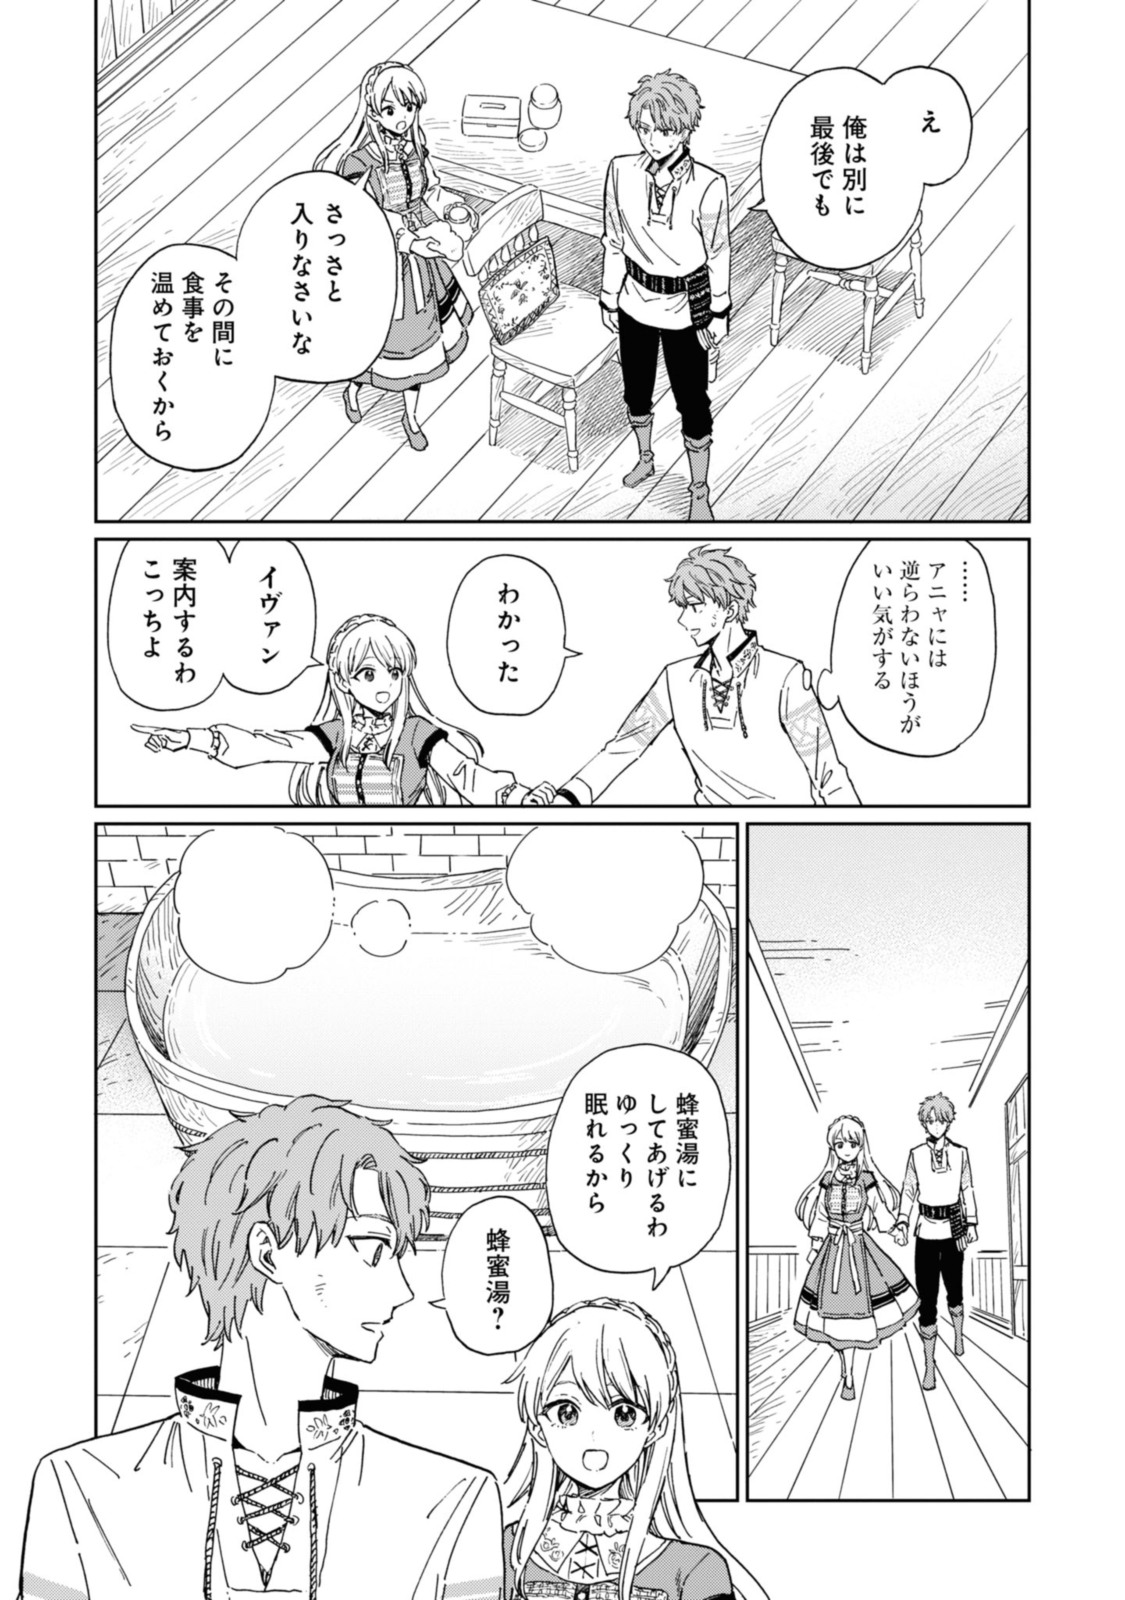 Youhou-ka to Mitsu Kusushi no Hanayome - Chapter 1.2 - Page 9